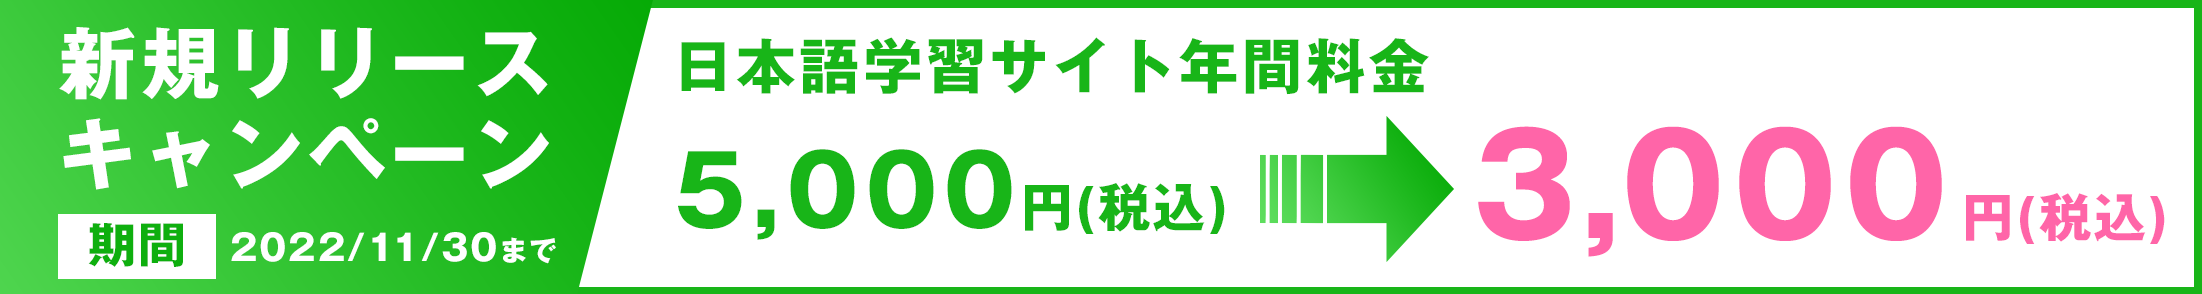 新規リリースキャンペーン5,000円→3,000円